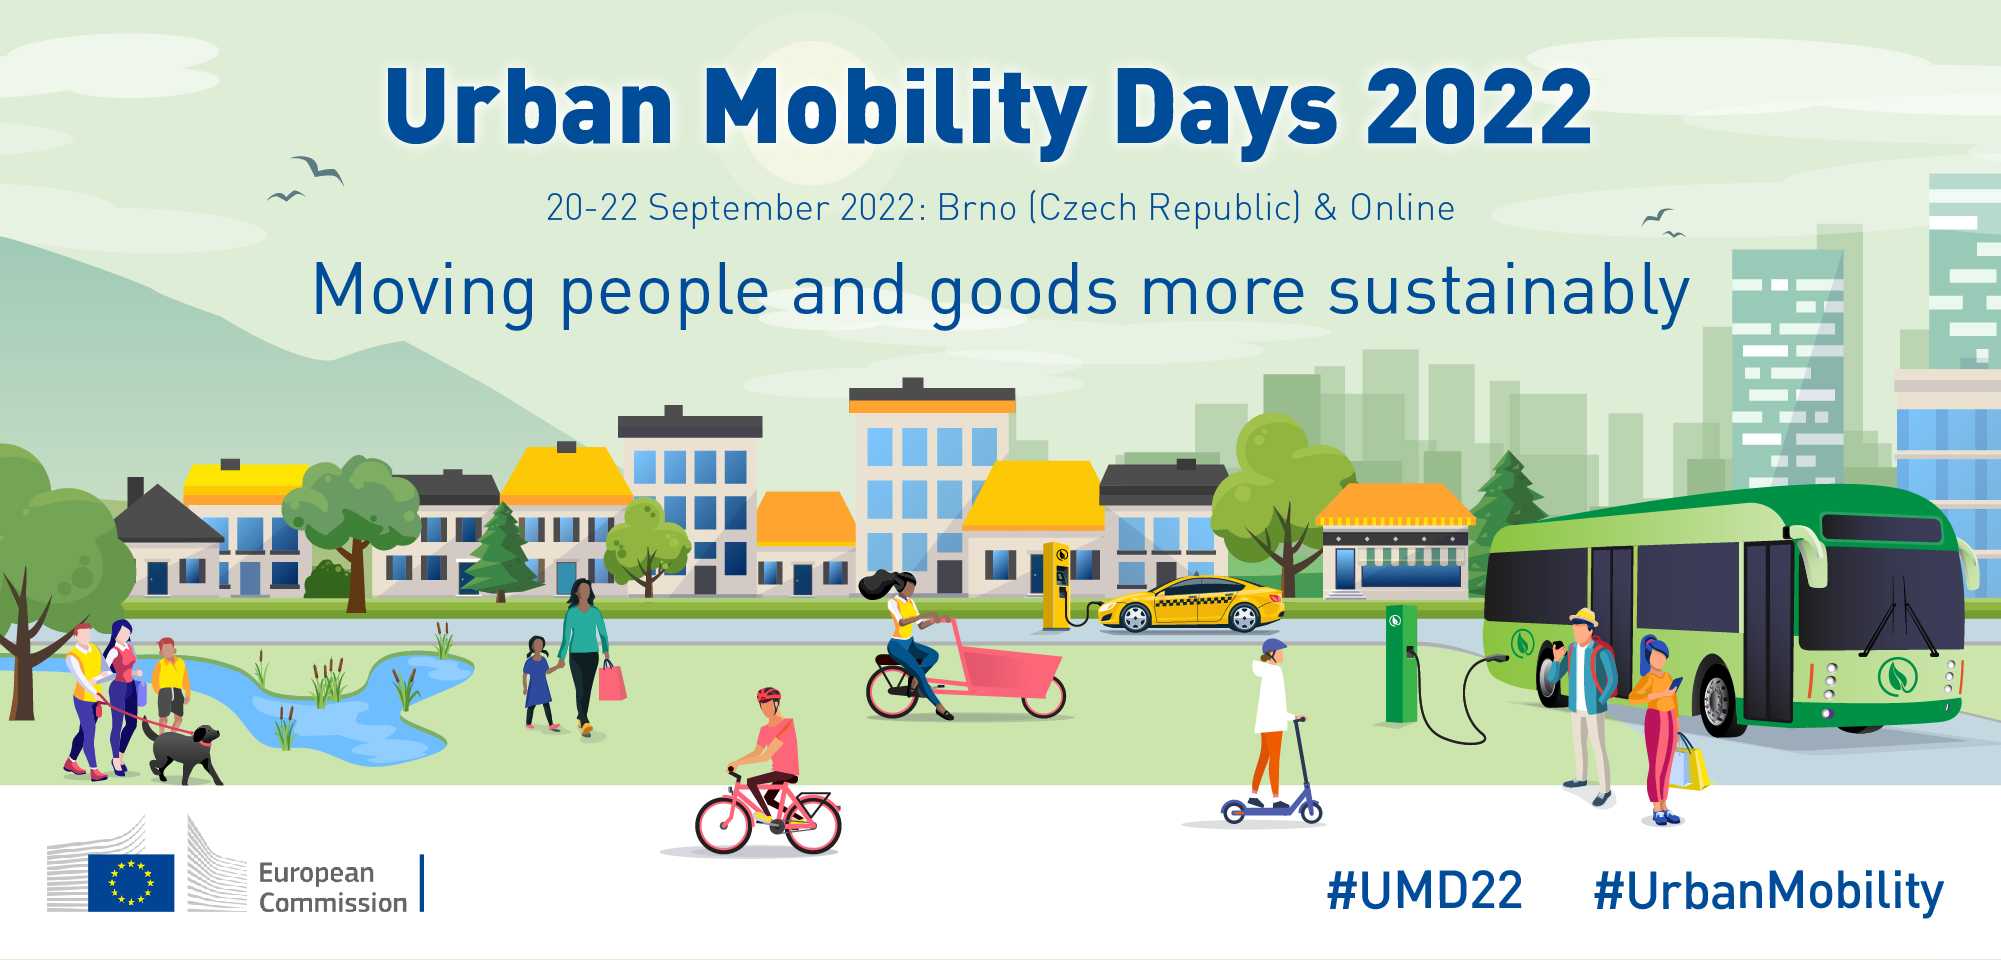 V Brně se uskuteční konference Urban Mobility Days 2022!  